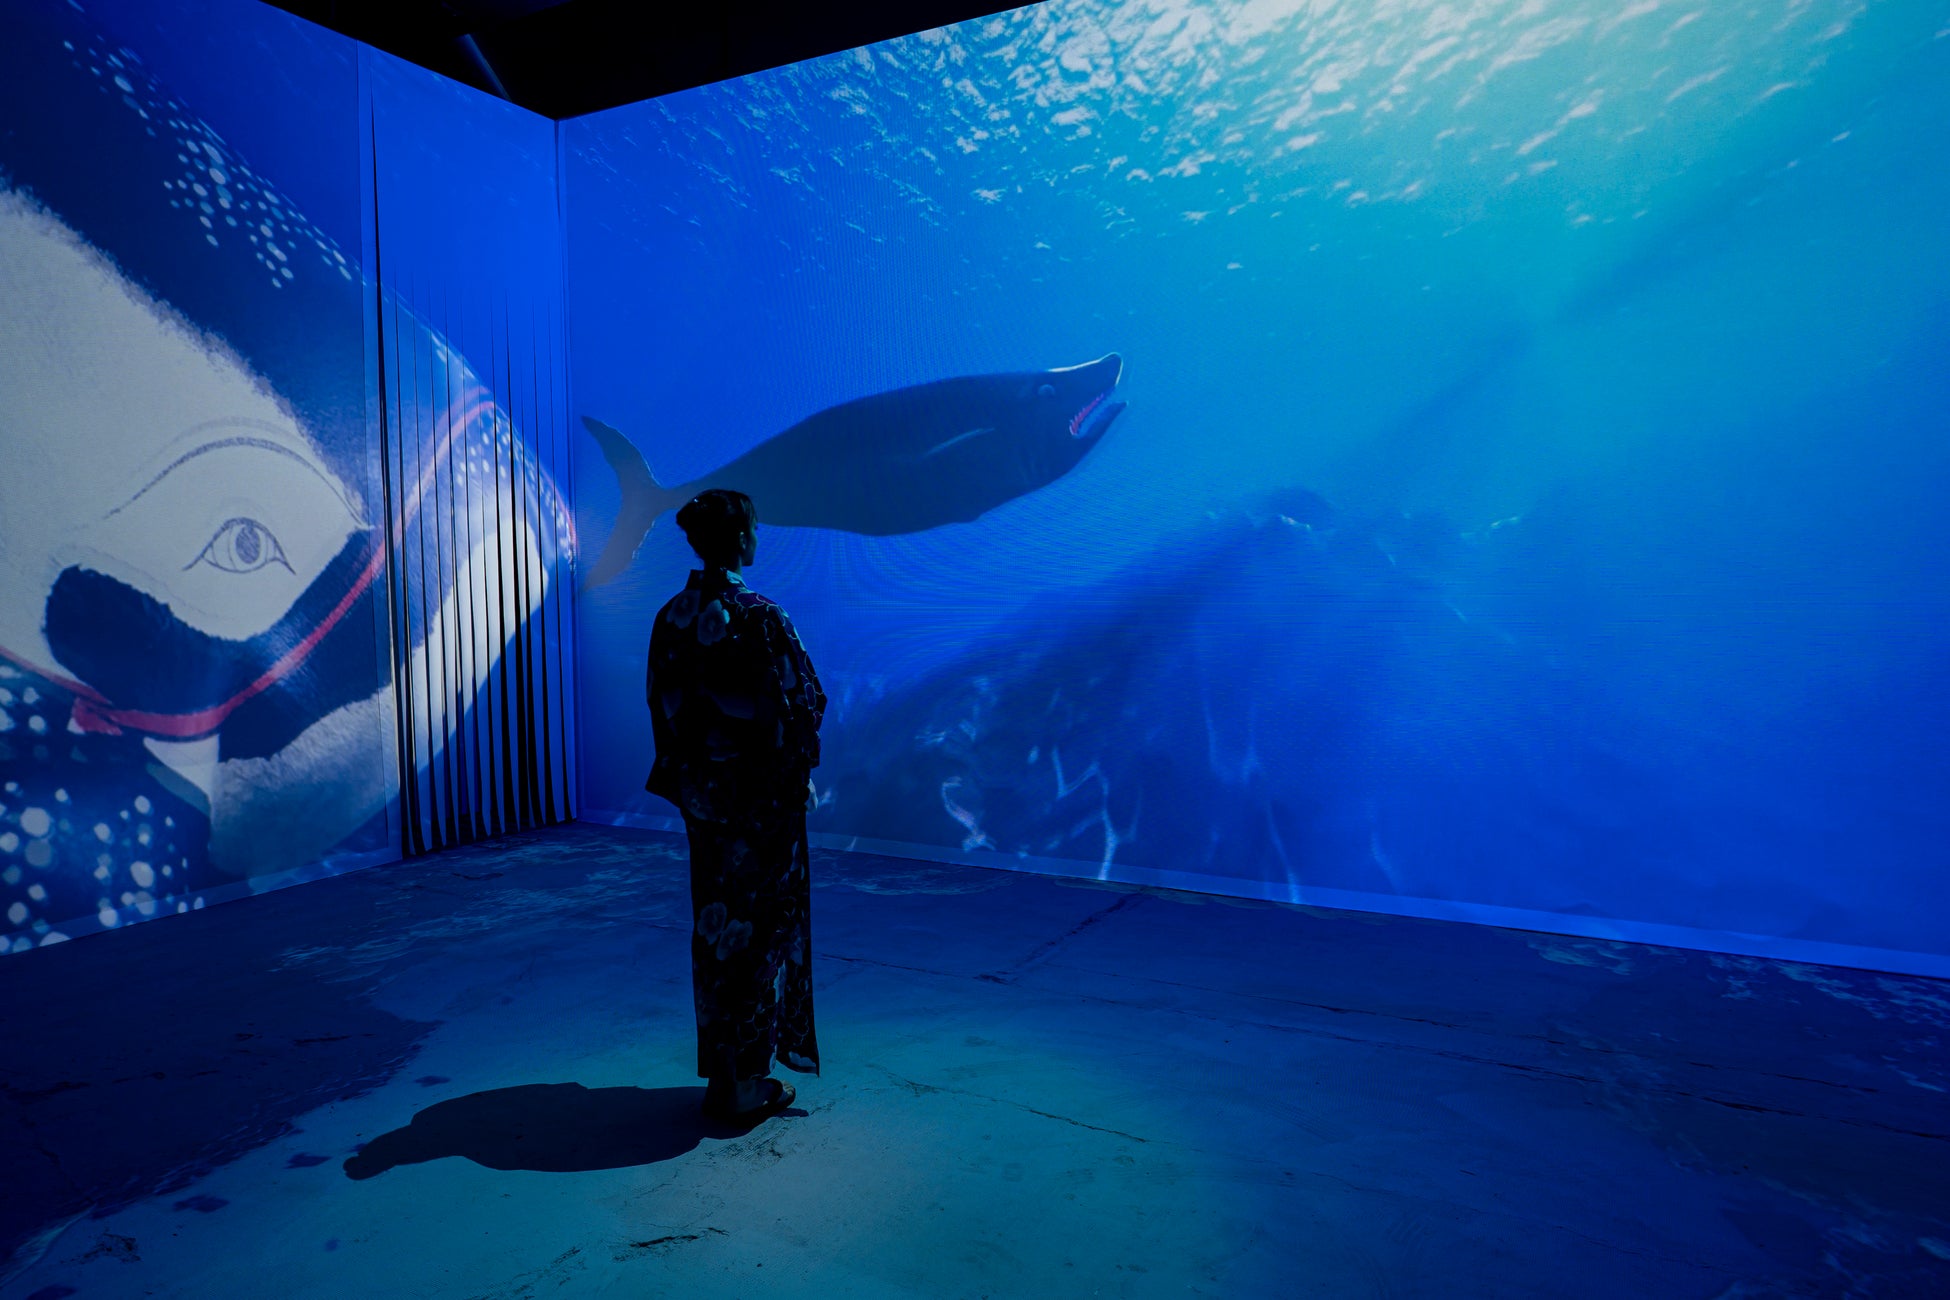 一旗プロデュース「動き出す浮世絵展 MILANO」の公式記録映像“藍”を公開。世界で「ジャパン・ブルー」と絶賛され、その美しさに多くの人が魅了される「藍色」をテーマとする映像空間。